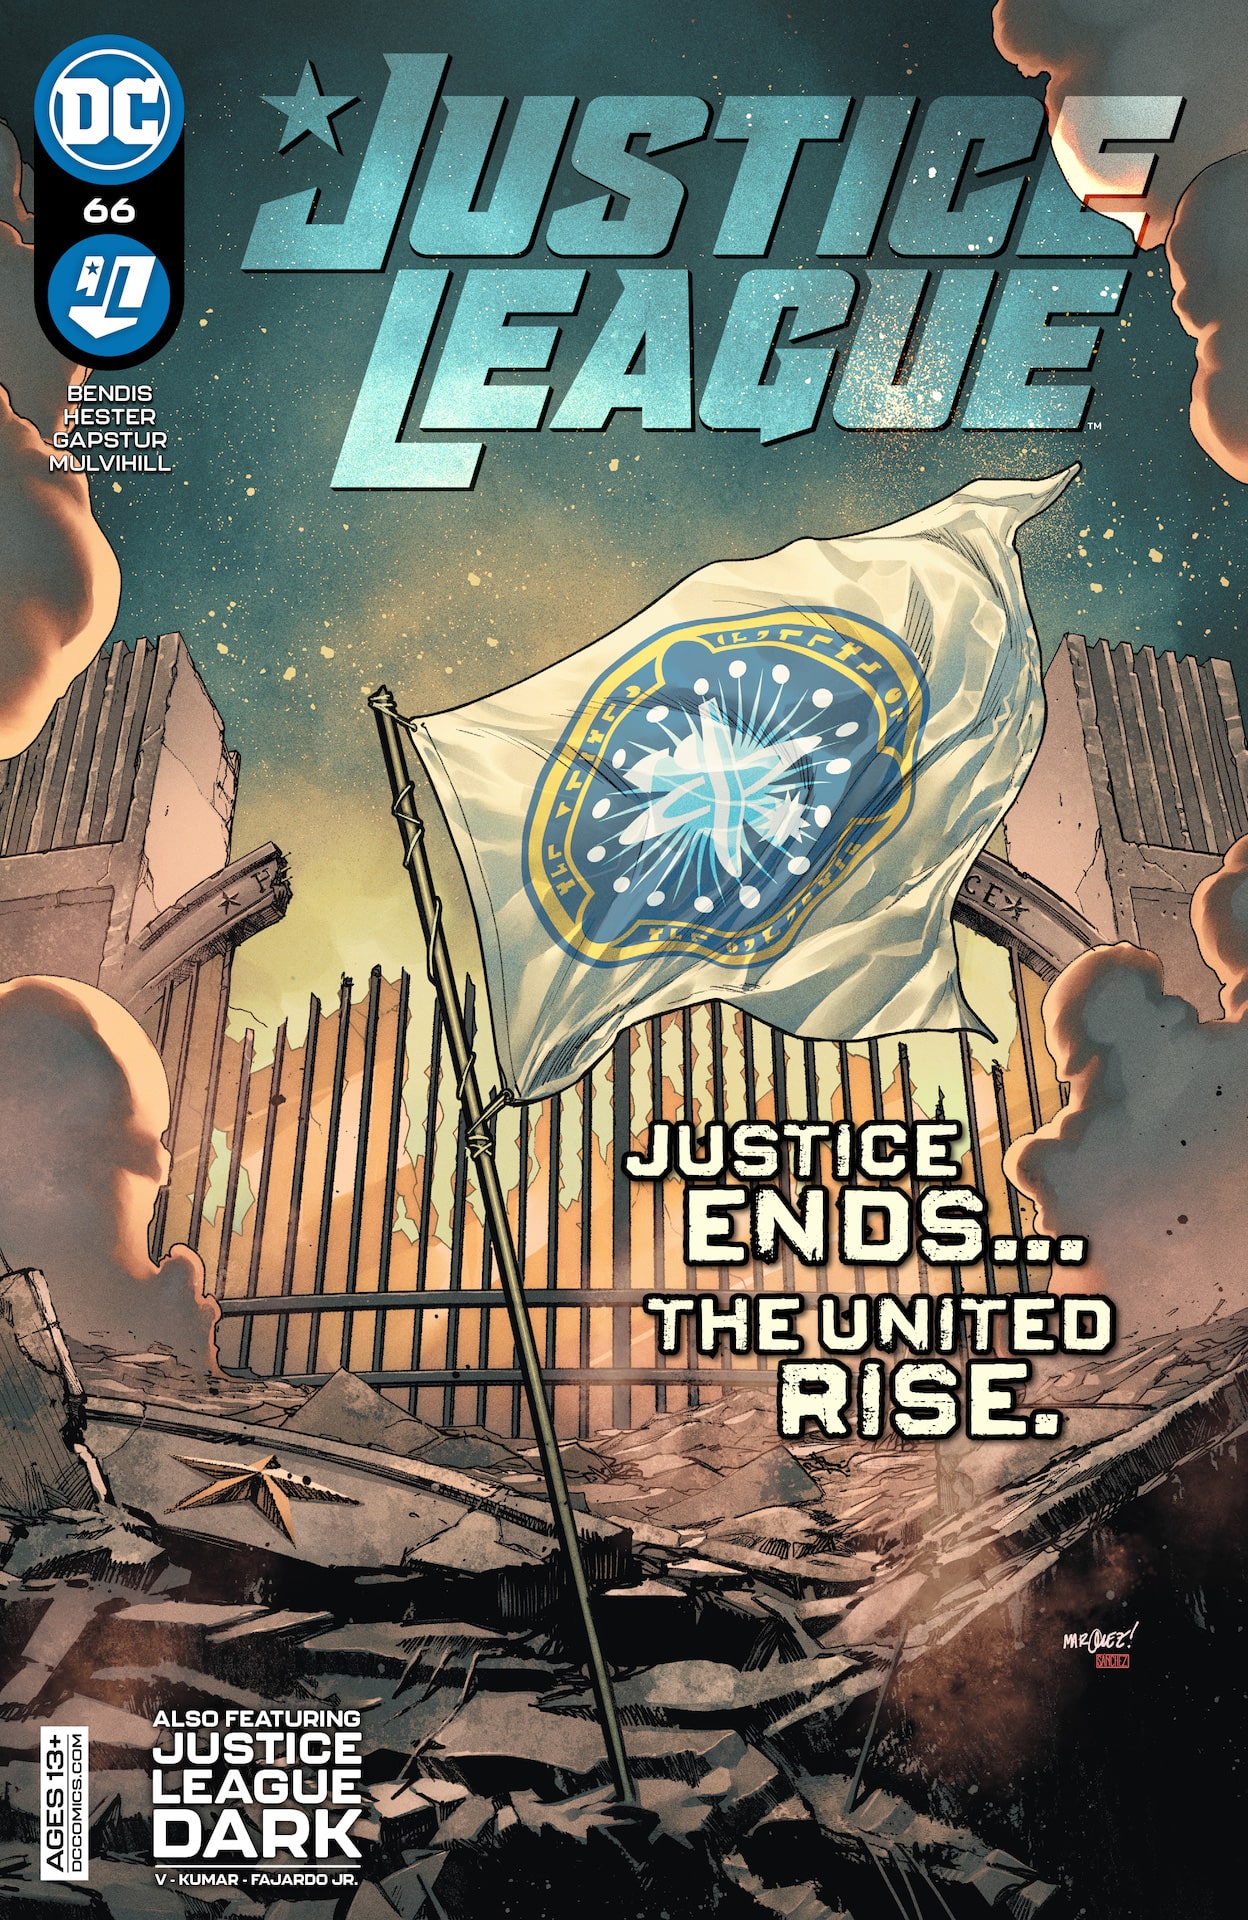 DC Preview: Justice League #66